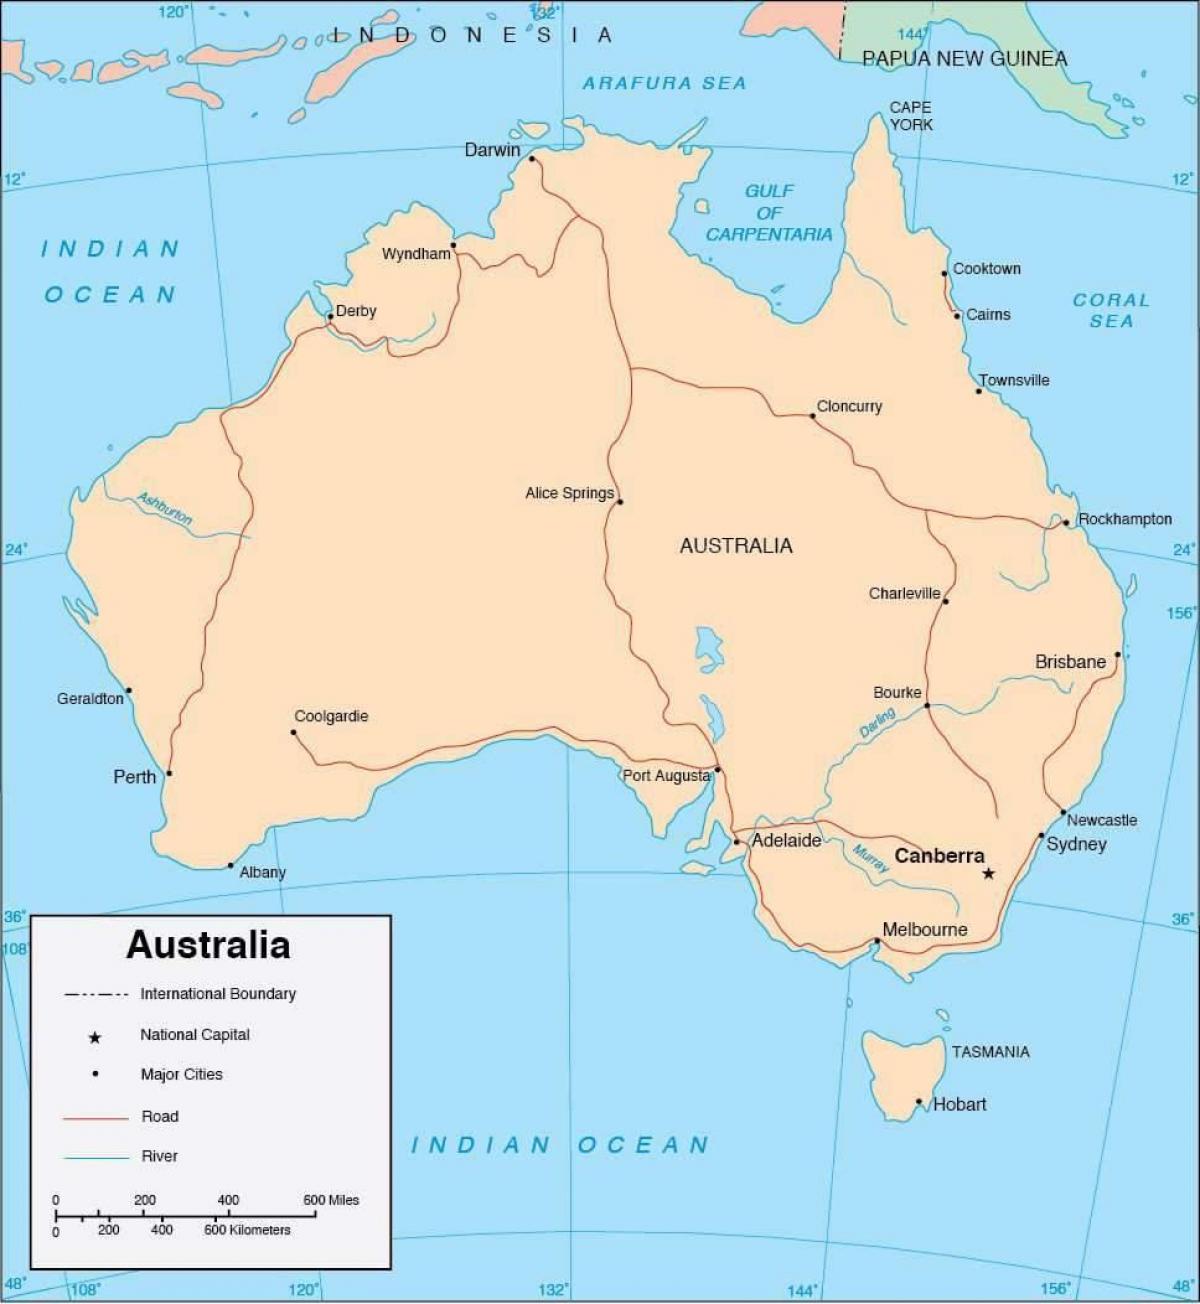 Mapa da Austrália com as principais cidades